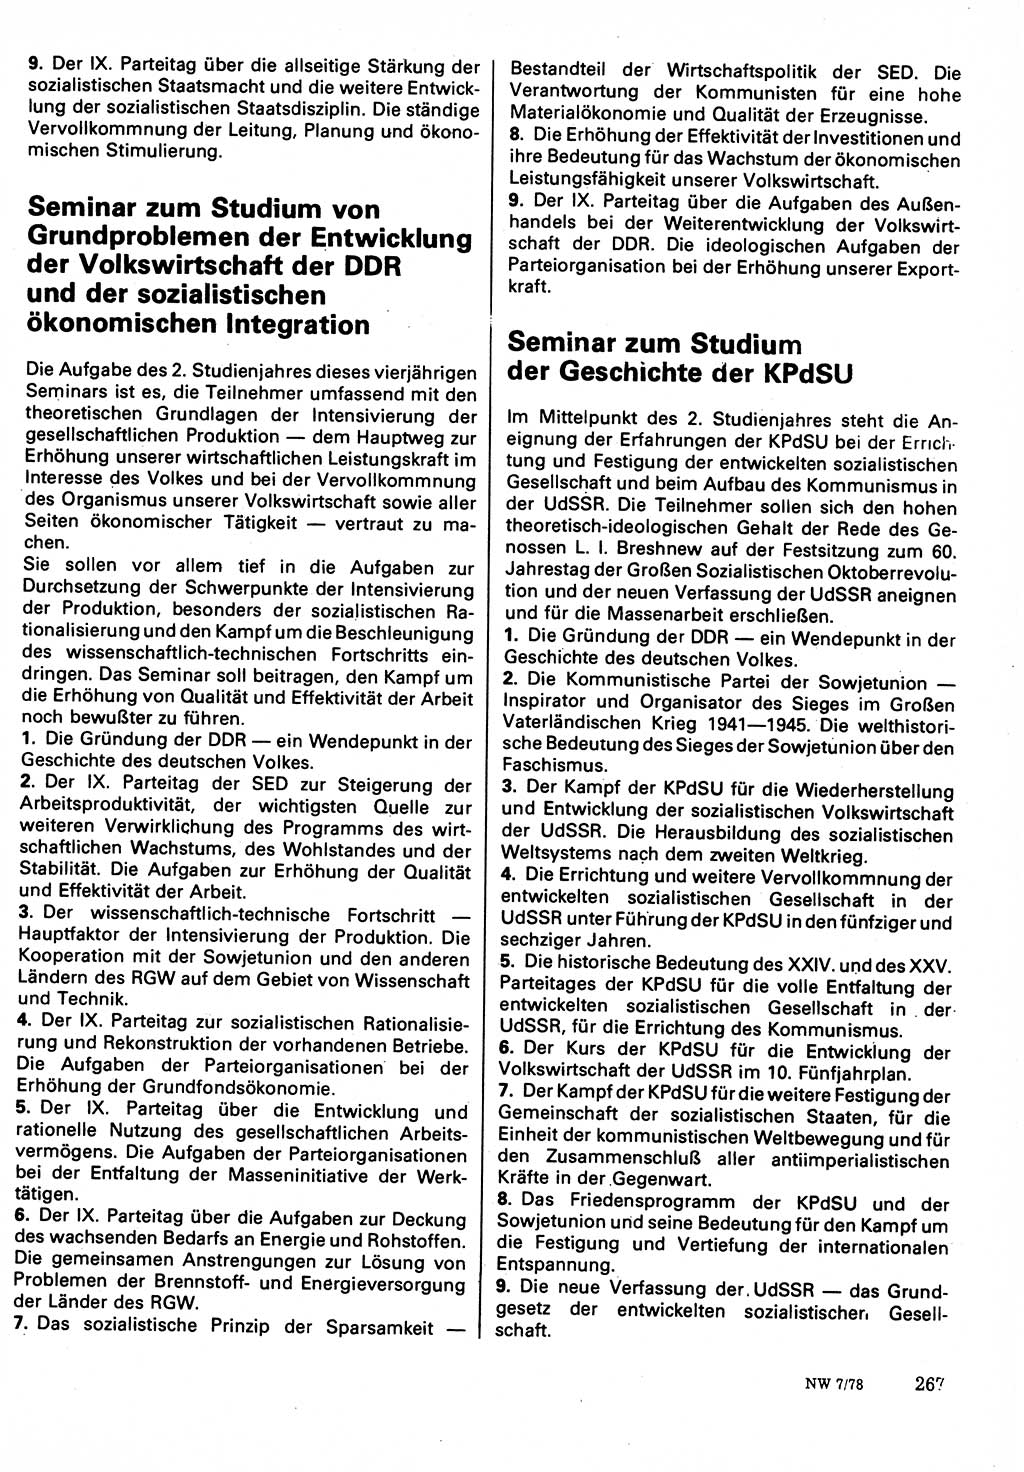 Neuer Weg (NW), Organ des Zentralkomitees (ZK) der SED (Sozialistische Einheitspartei Deutschlands) für Fragen des Parteilebens, 33. Jahrgang [Deutsche Demokratische Republik (DDR)] 1978, Seite 267 (NW ZK SED DDR 1978, S. 267)